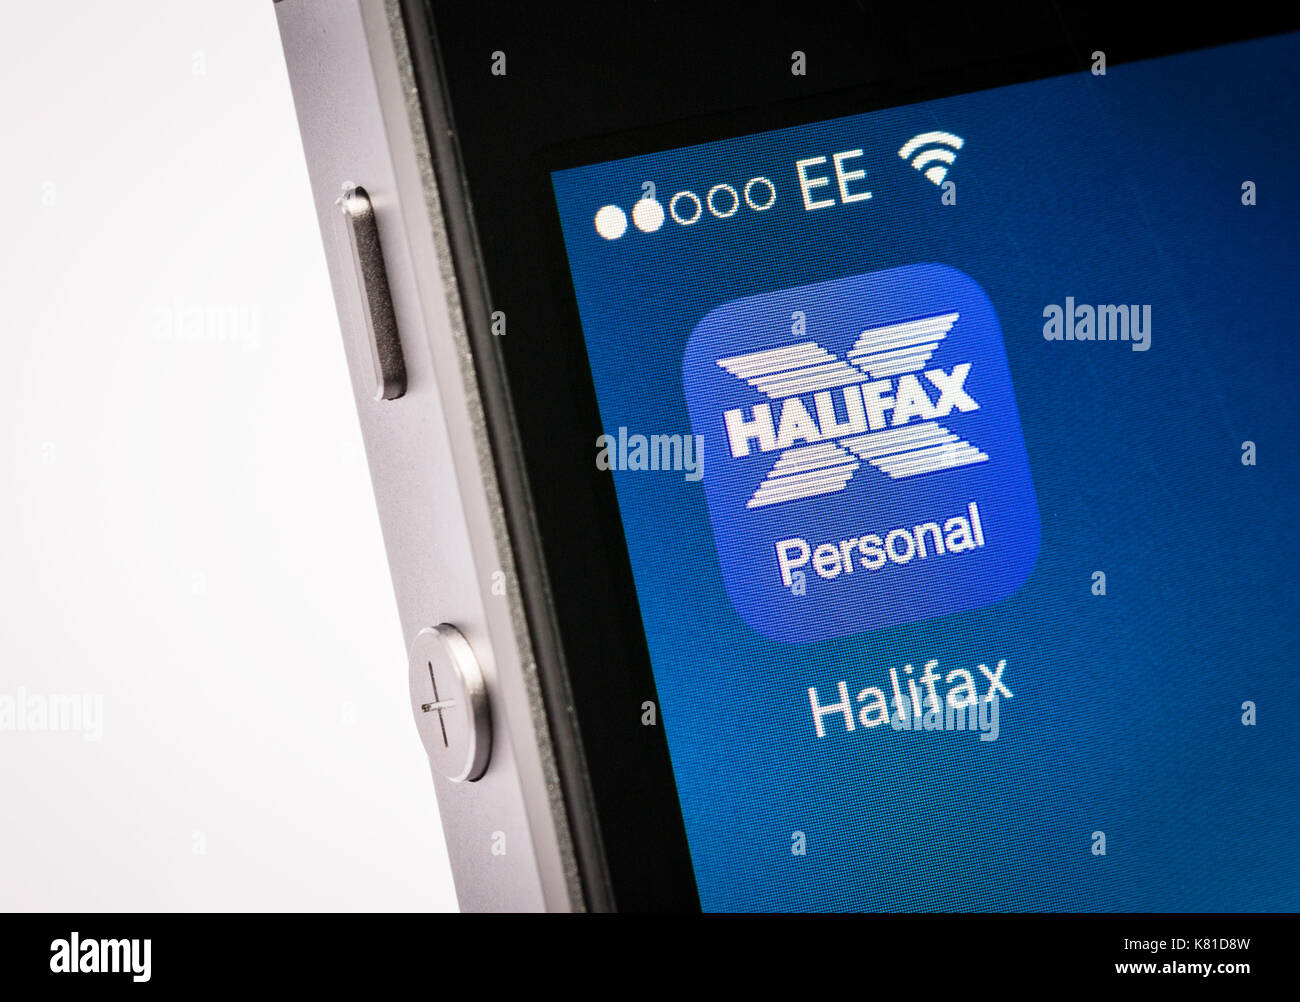 Application mobile banking Halifax sur un téléphone mobile iPhone Banque D'Images